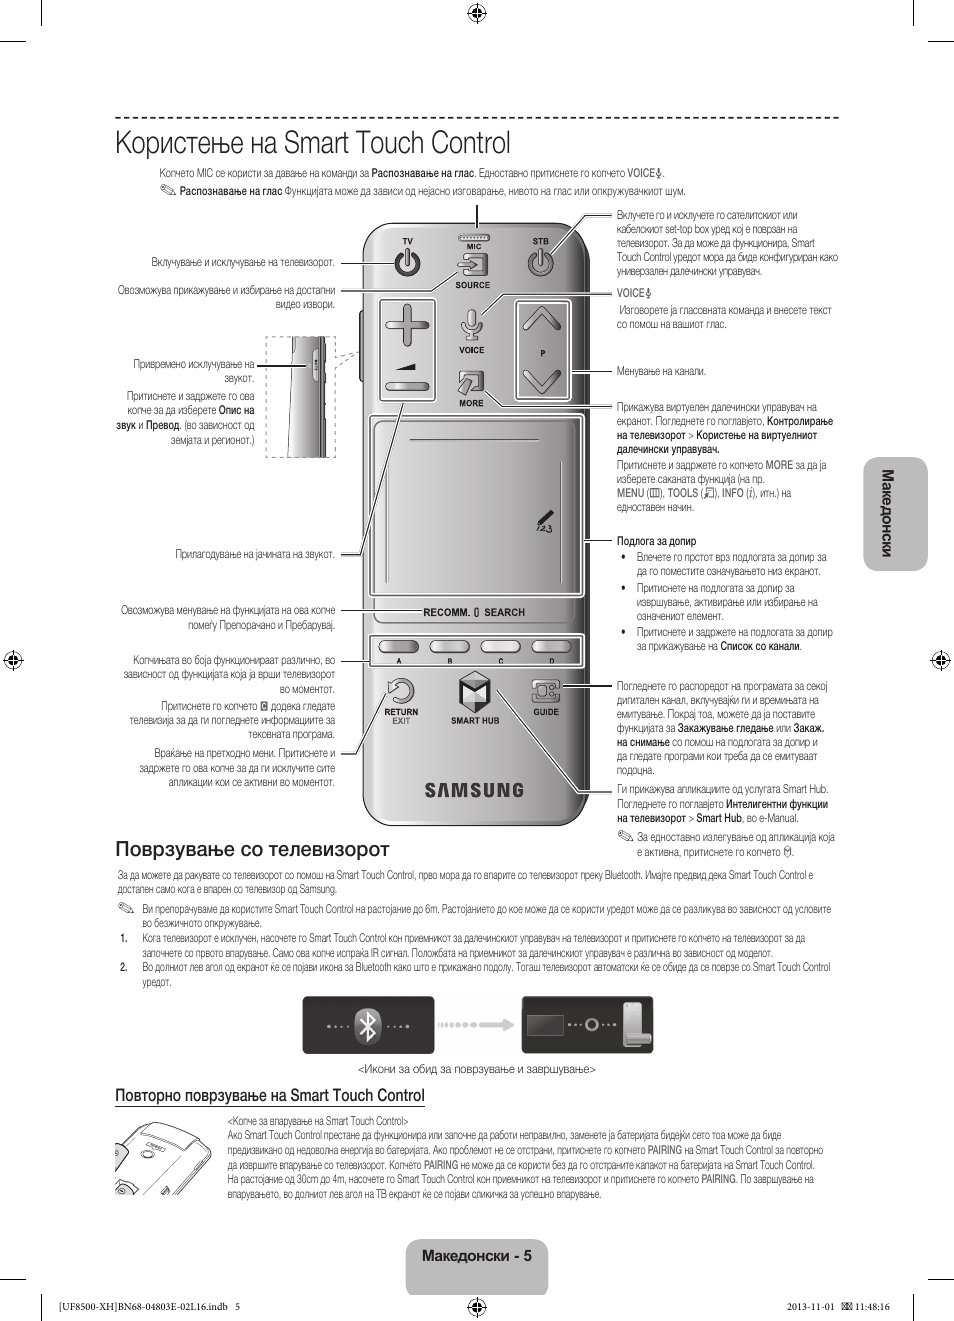 Користење на smart touch control, Поврзување со телевизорот, Повторно  поврзување на smart touch control | Samsung UE46F8500SL User Manual | Page  269 / 385 | Original mode